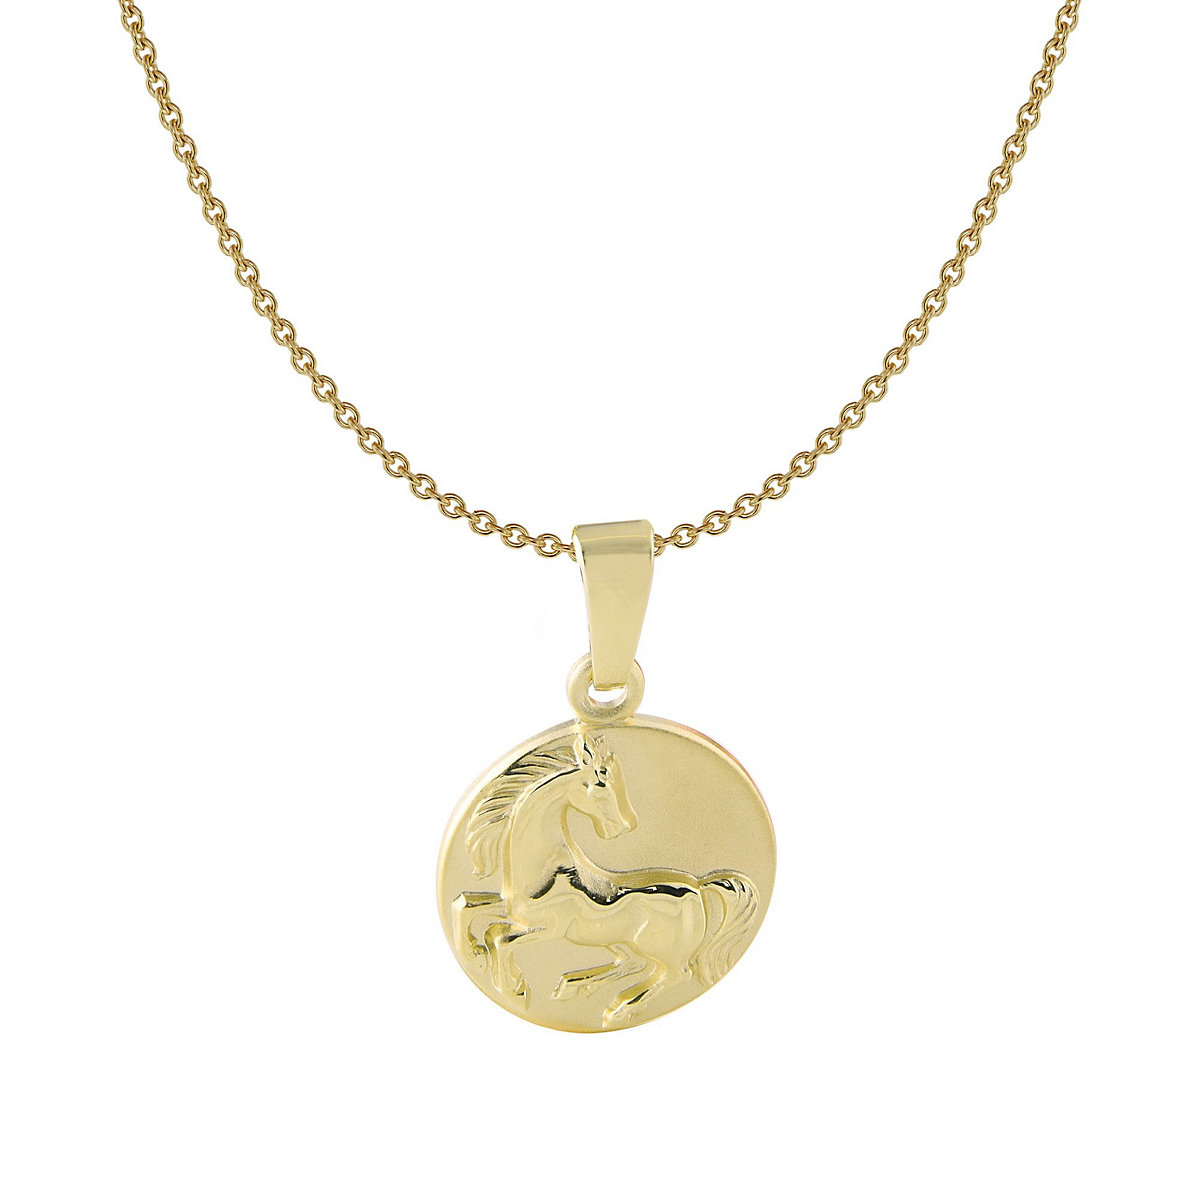 ACALEE Kinder-Halskette mit Pferd-Anhänger 333 / 8K Gold Halsketten gold